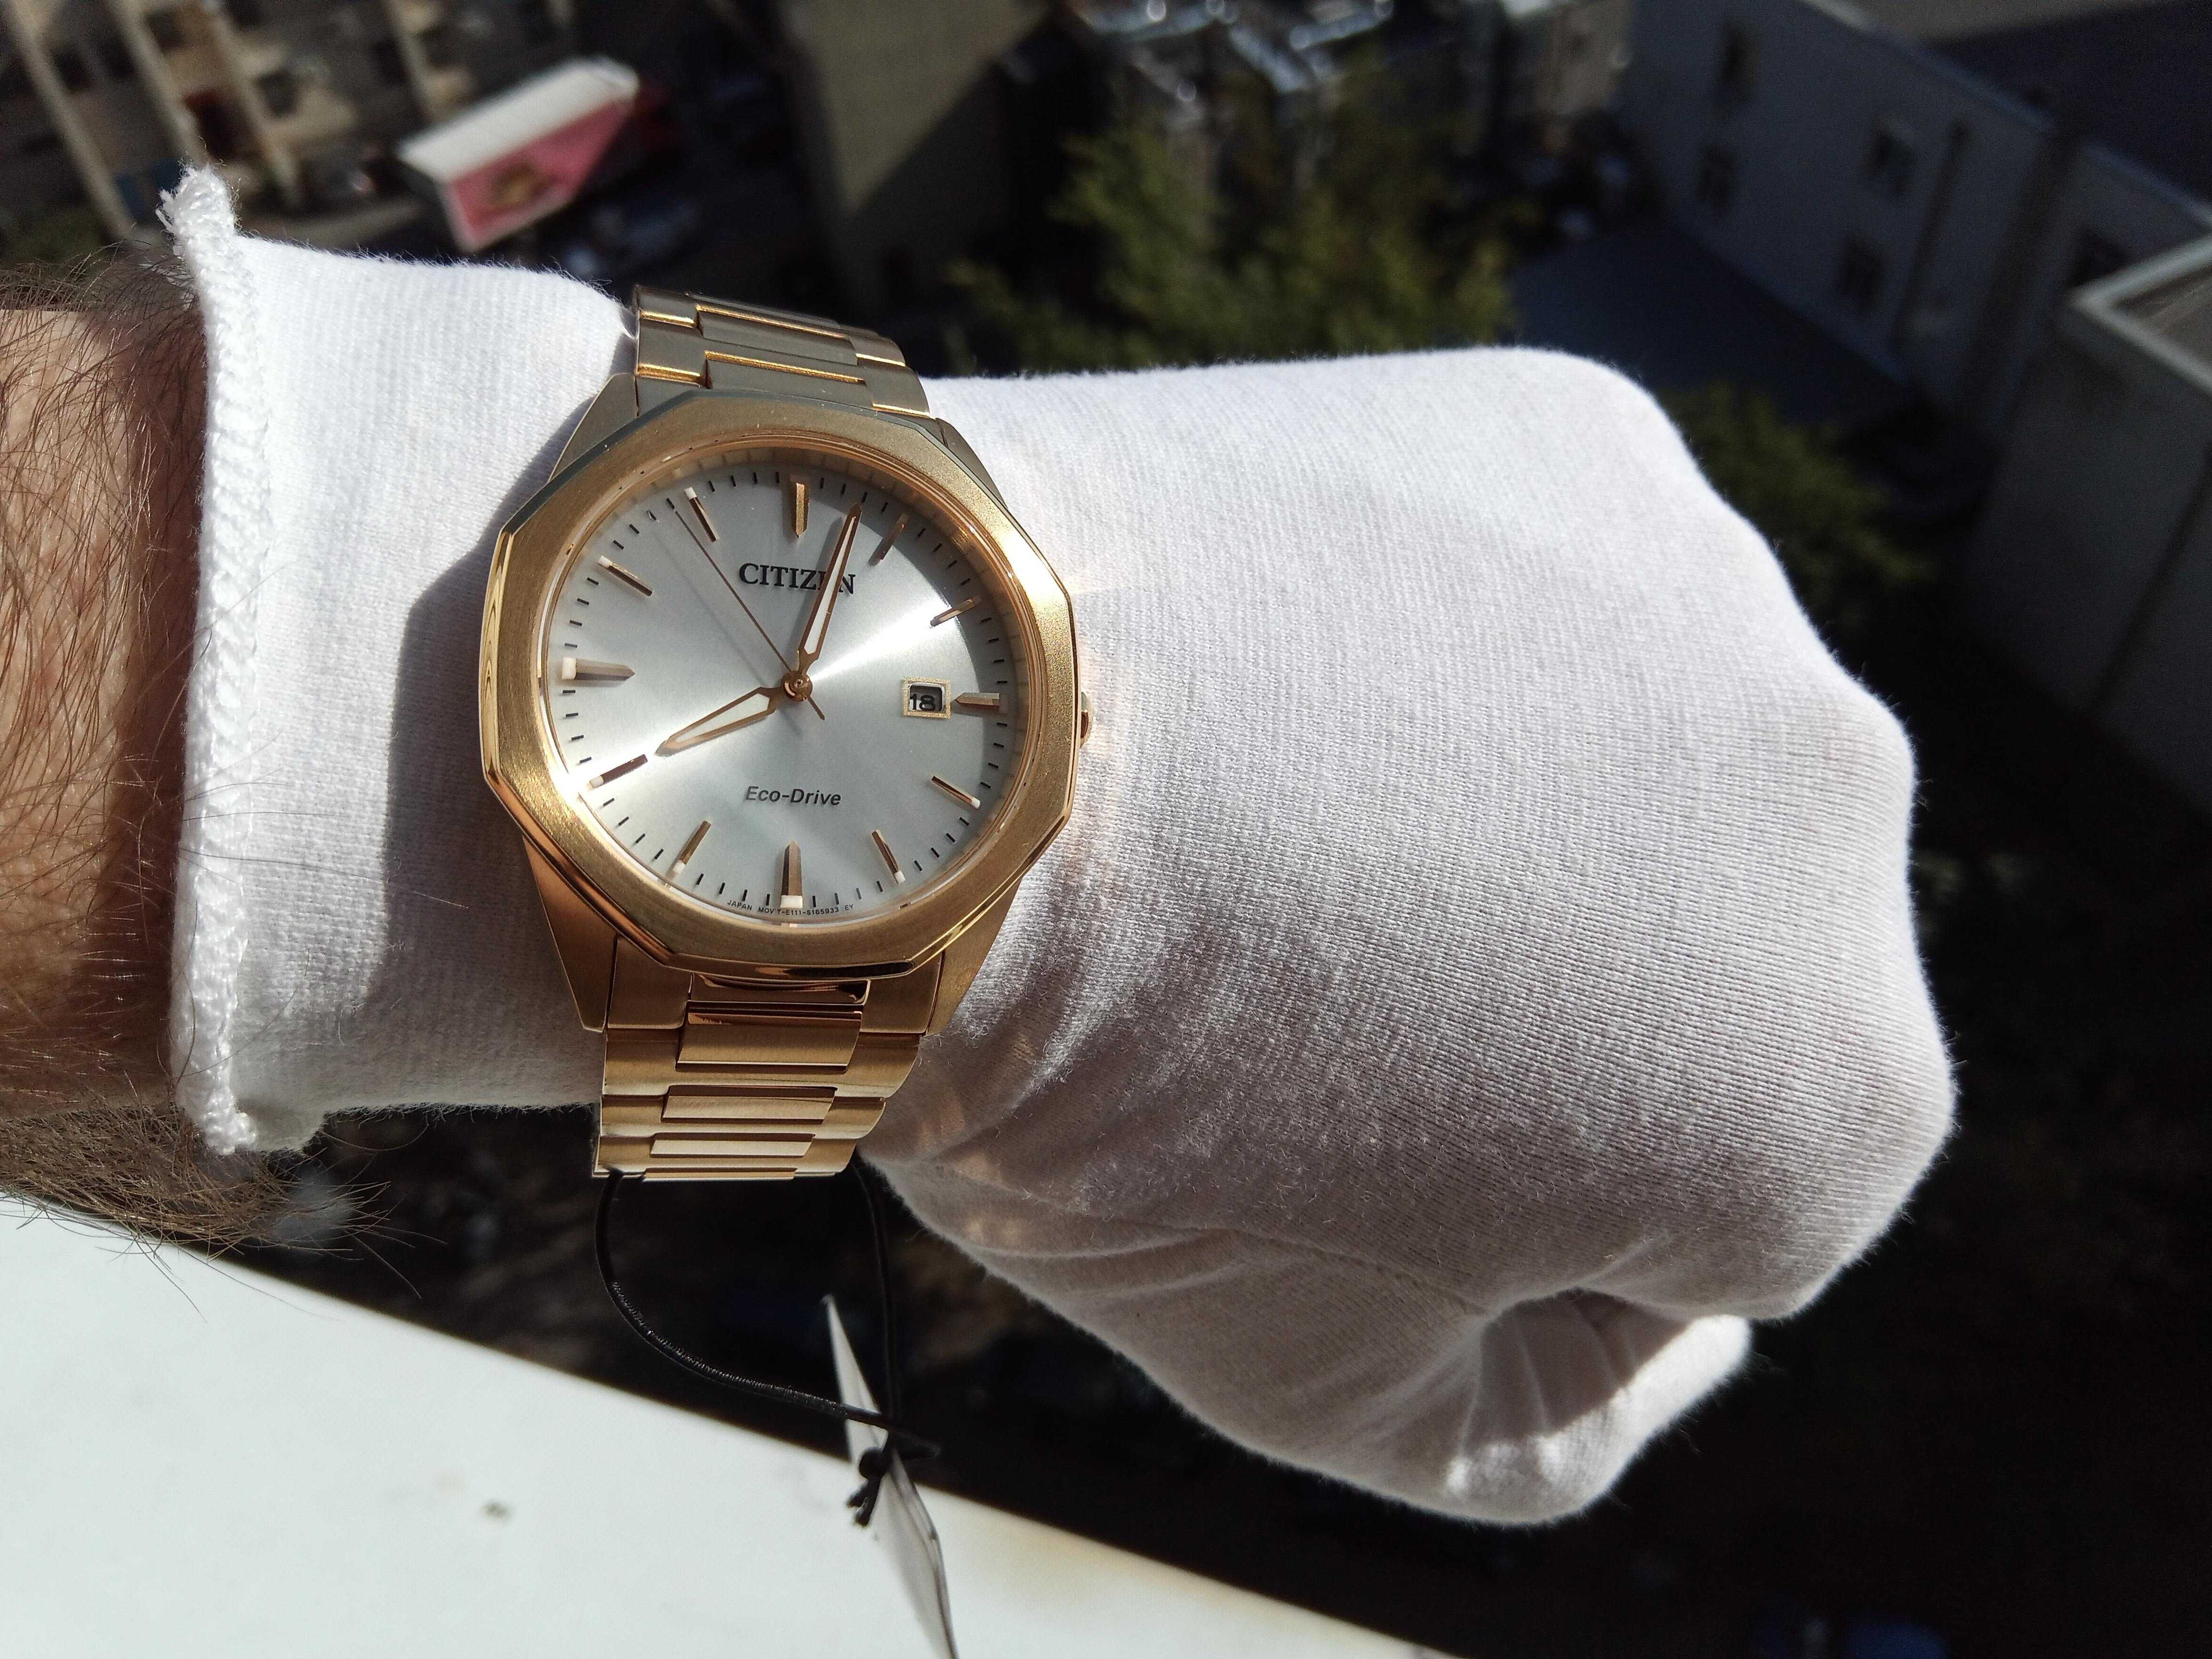 Японские мужские часы Citizen Eco-Drive BM7492-57A, сапфировое стекло